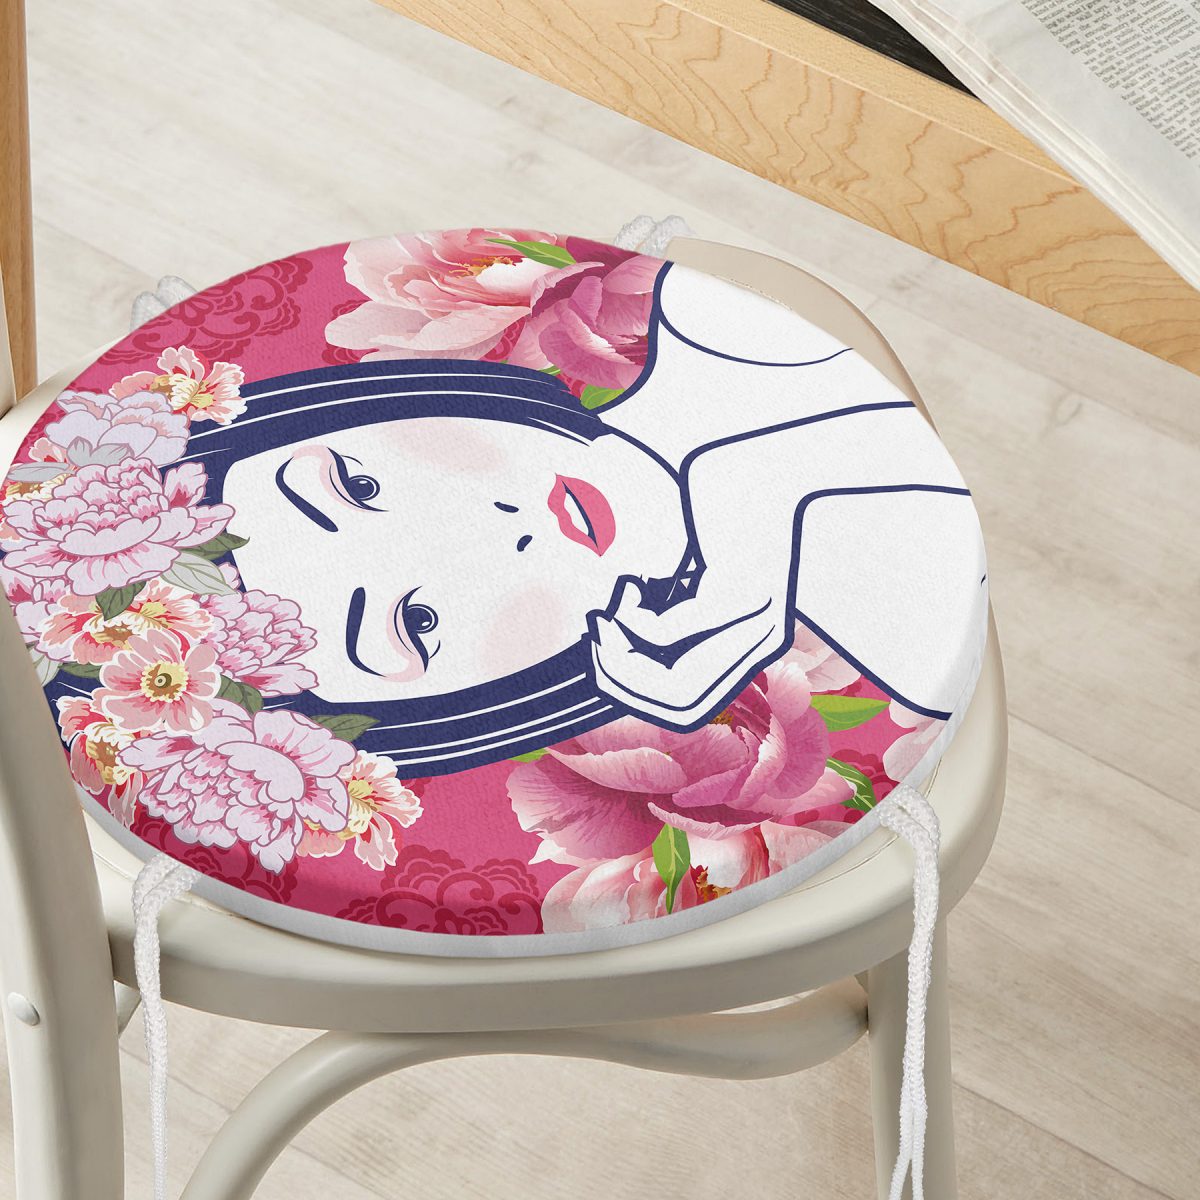 Çiçek Taçlı Japon Kadın Figürlü Yuvarlak Fermuarlı Sandalye Minderi Realhomes